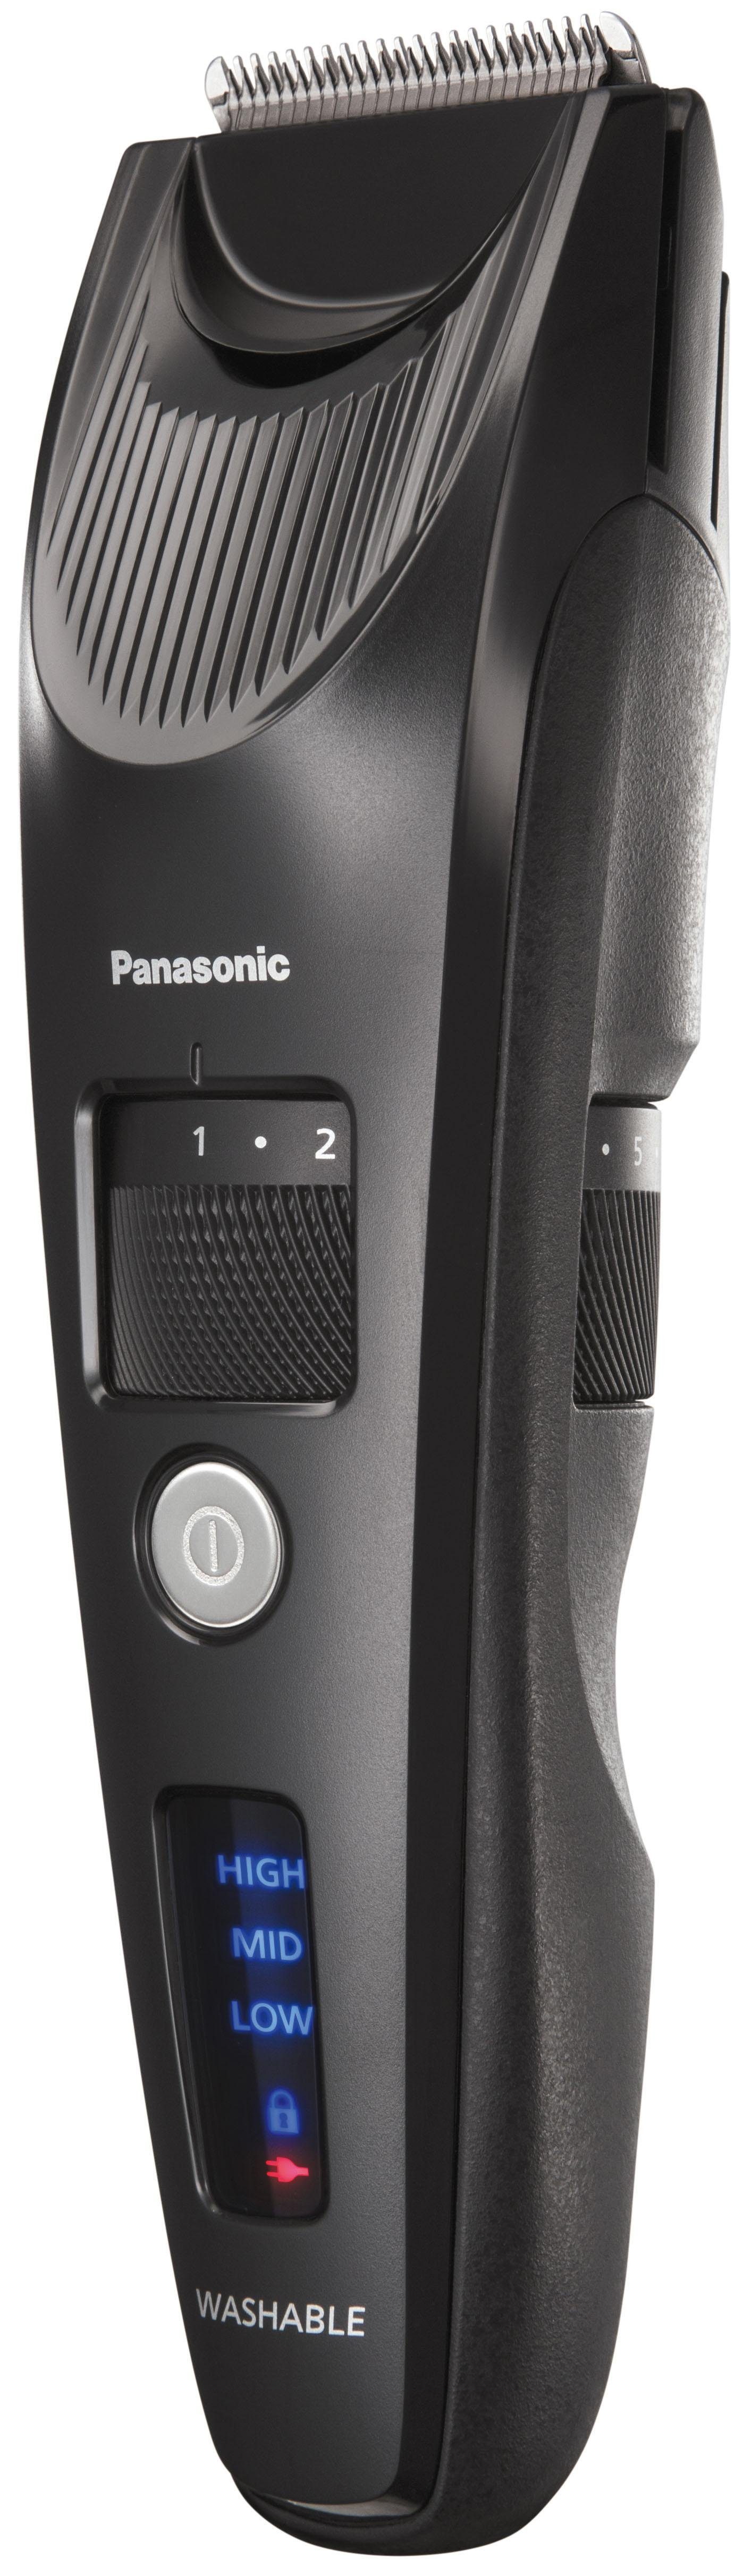 Panasonic Haar- und Bartschneider ER-SC40-K803, mit Linearmotor kraftvollem